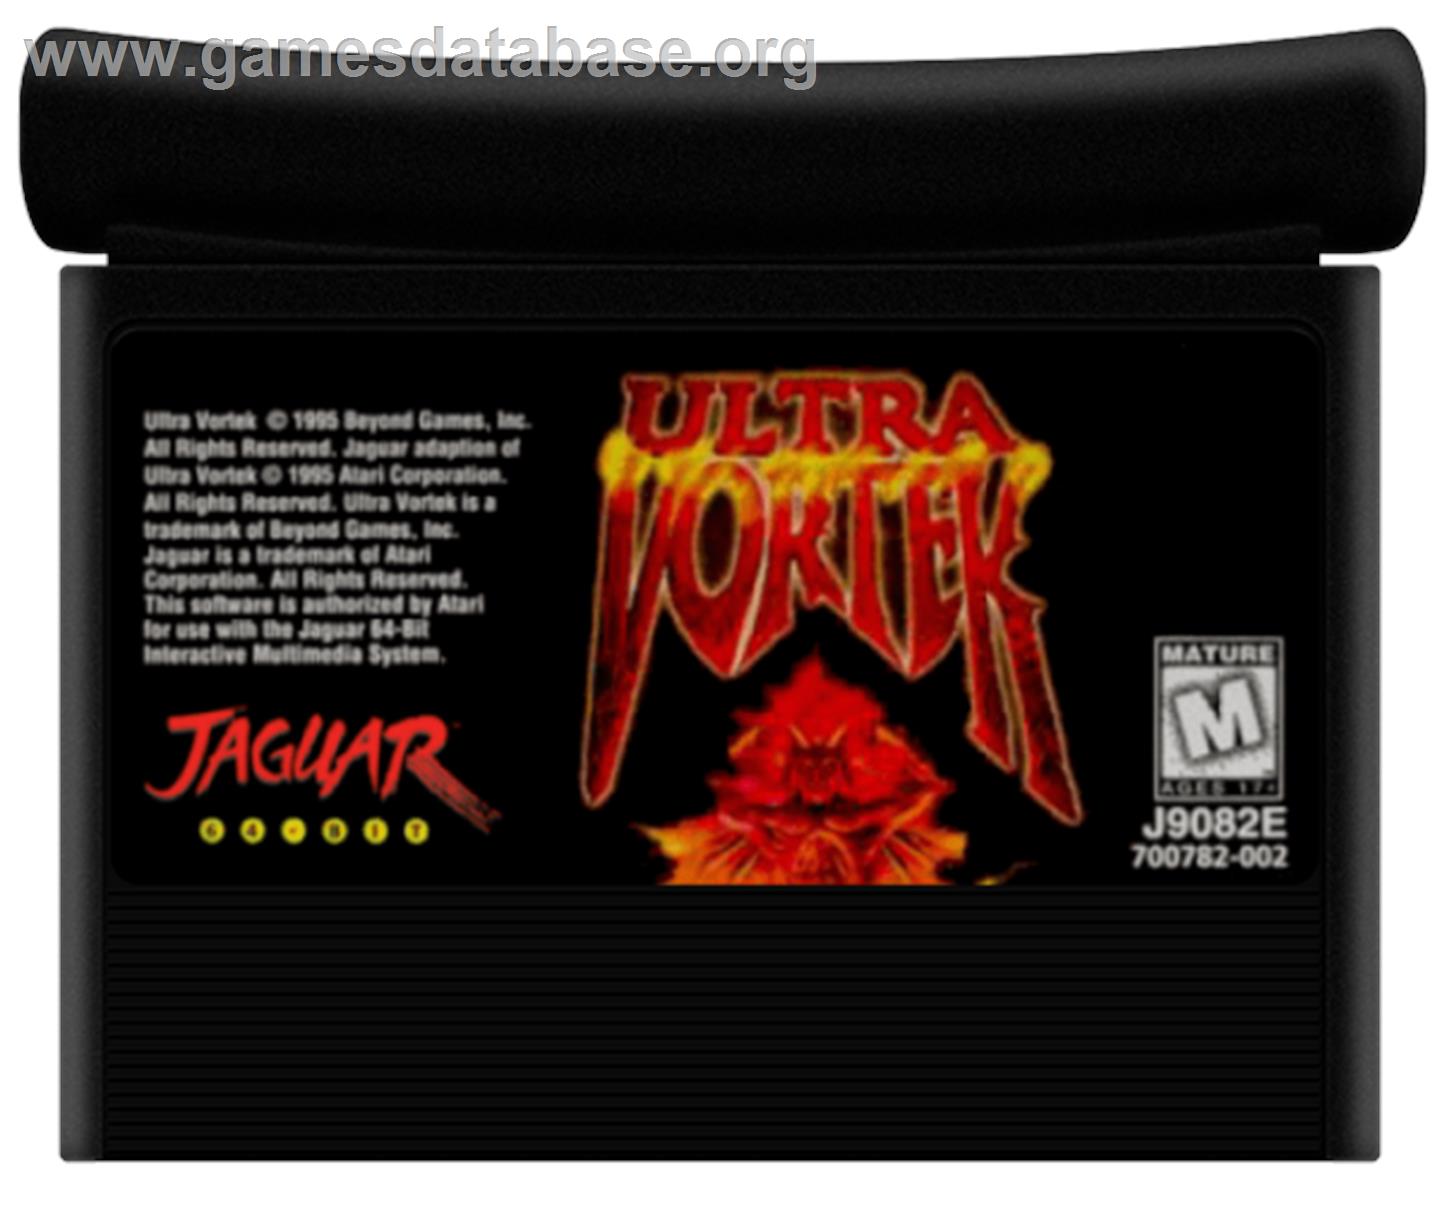 Ultra Vortek (Beta) - Atari Jaguar - Artwork - Cartridge